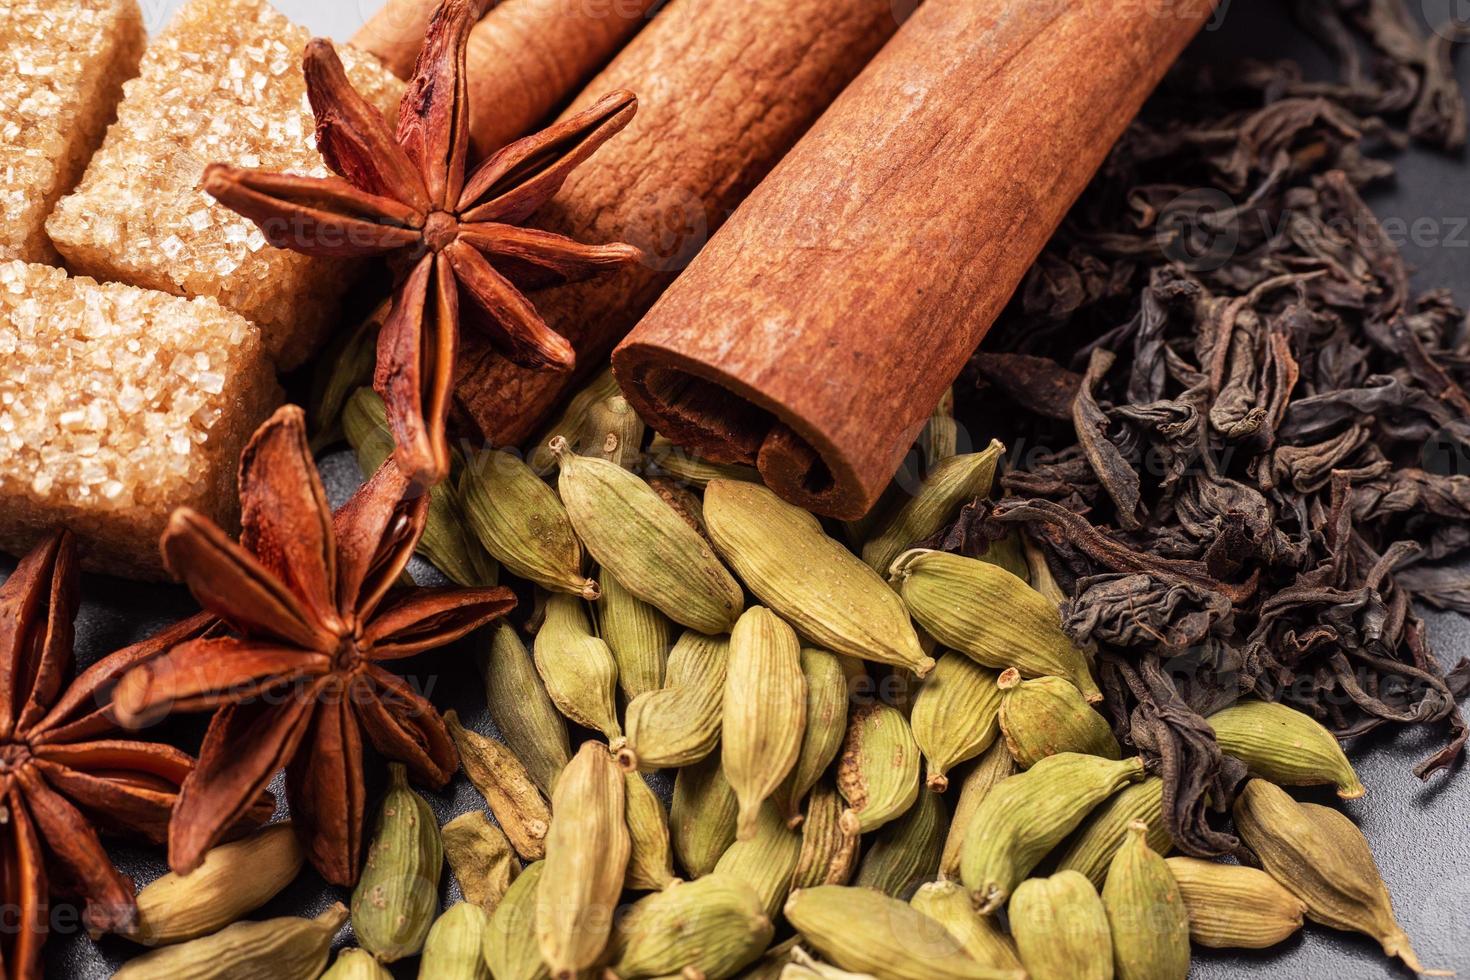 grãos integrais de cardamomo, um pau de canela, anis estrelado e açúcar de cana. copie o espaço. ingredientes para fazer o chá de masala de bebida indiana. foto